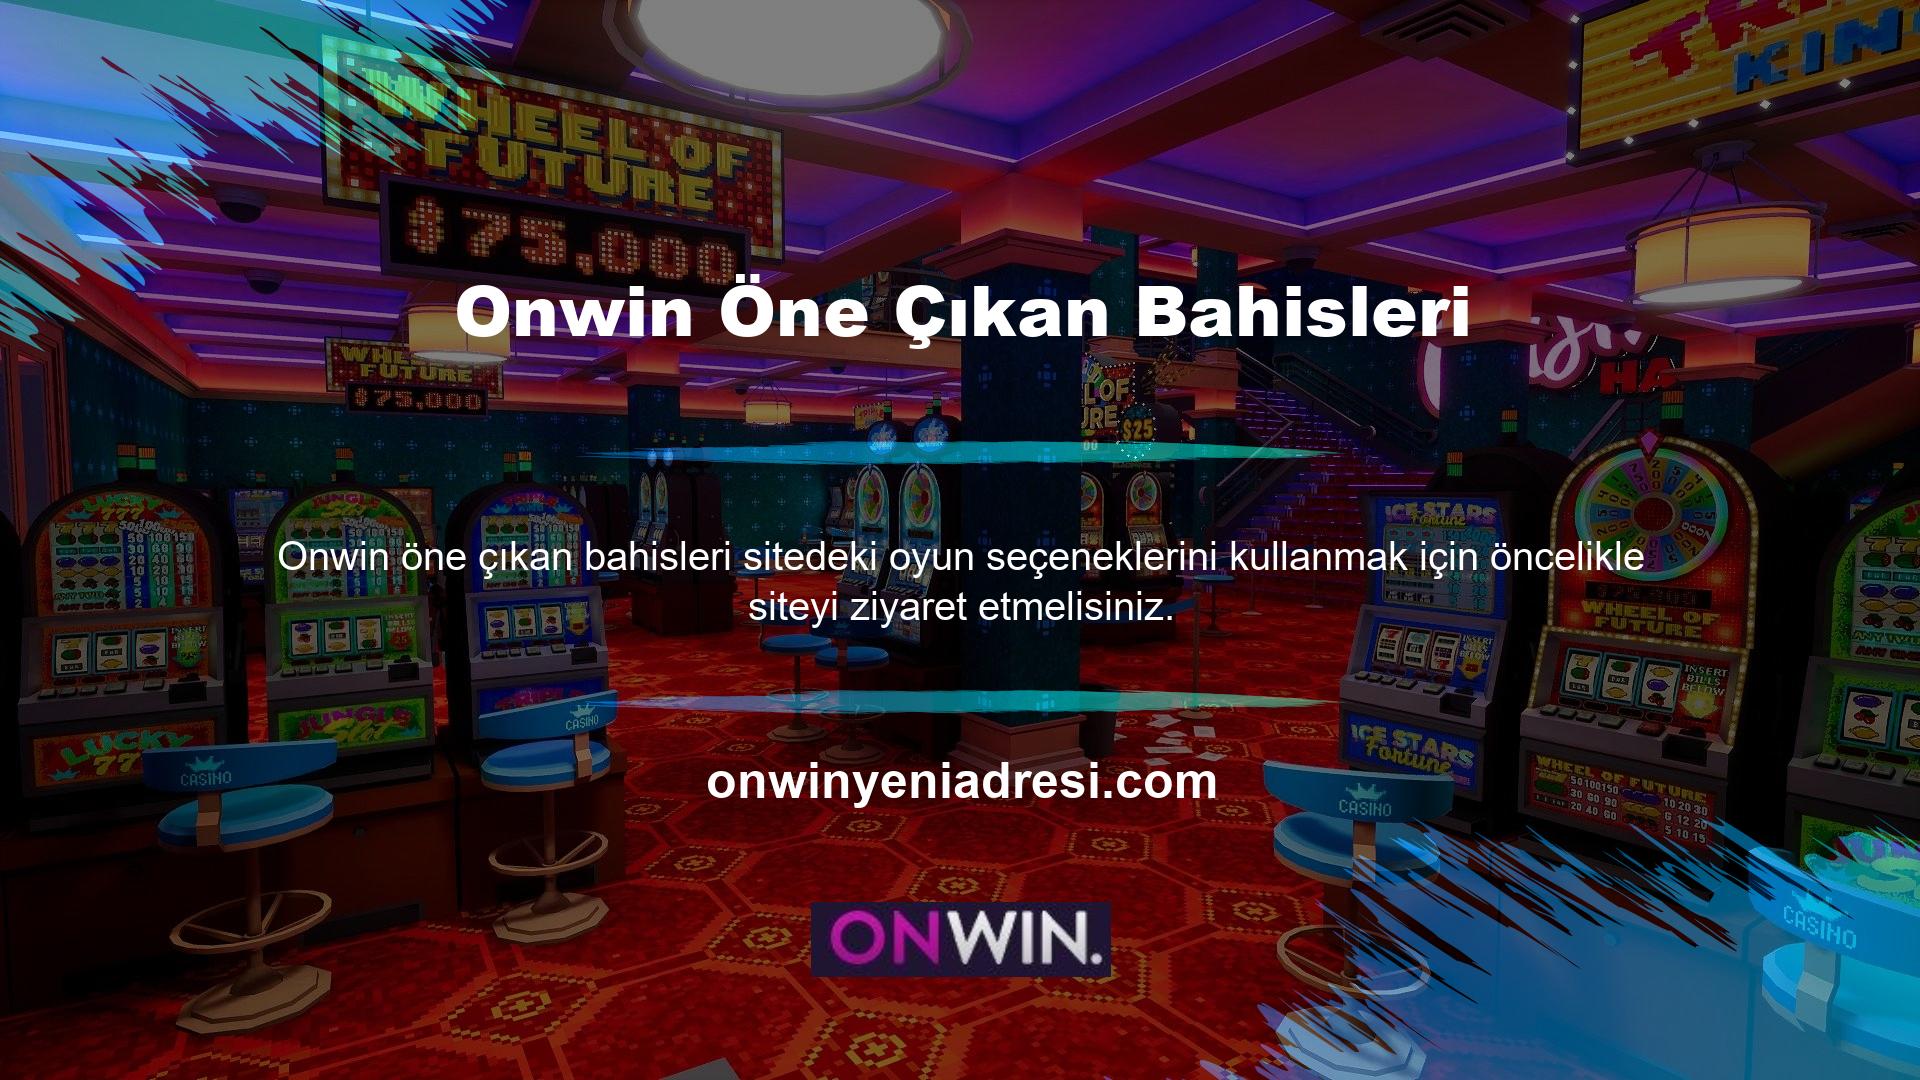 Onwin Canlı Casino oyun seçeneğine ulaşmak için site ana sayfasında bulunan menü çubuğundan 'Canlı Casino' seçeneğine tıklayınız